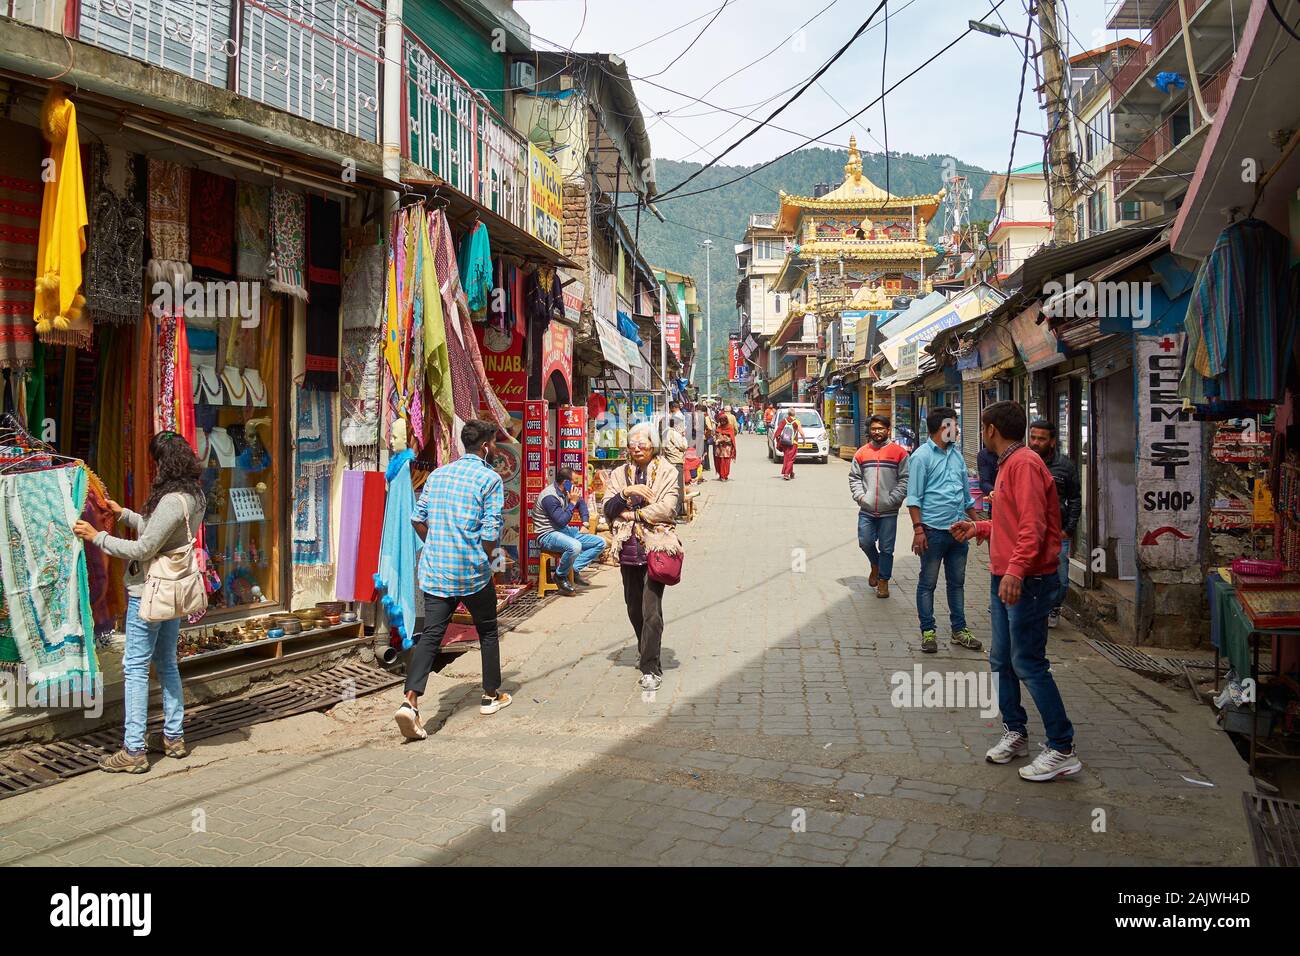 La vendita di oggetti fatti a mano e tessuti a mano è un'enorme fonte di reddito per la gente di McLeodganj vicino Dharamshala in Himachal Pradesh, India Foto Stock